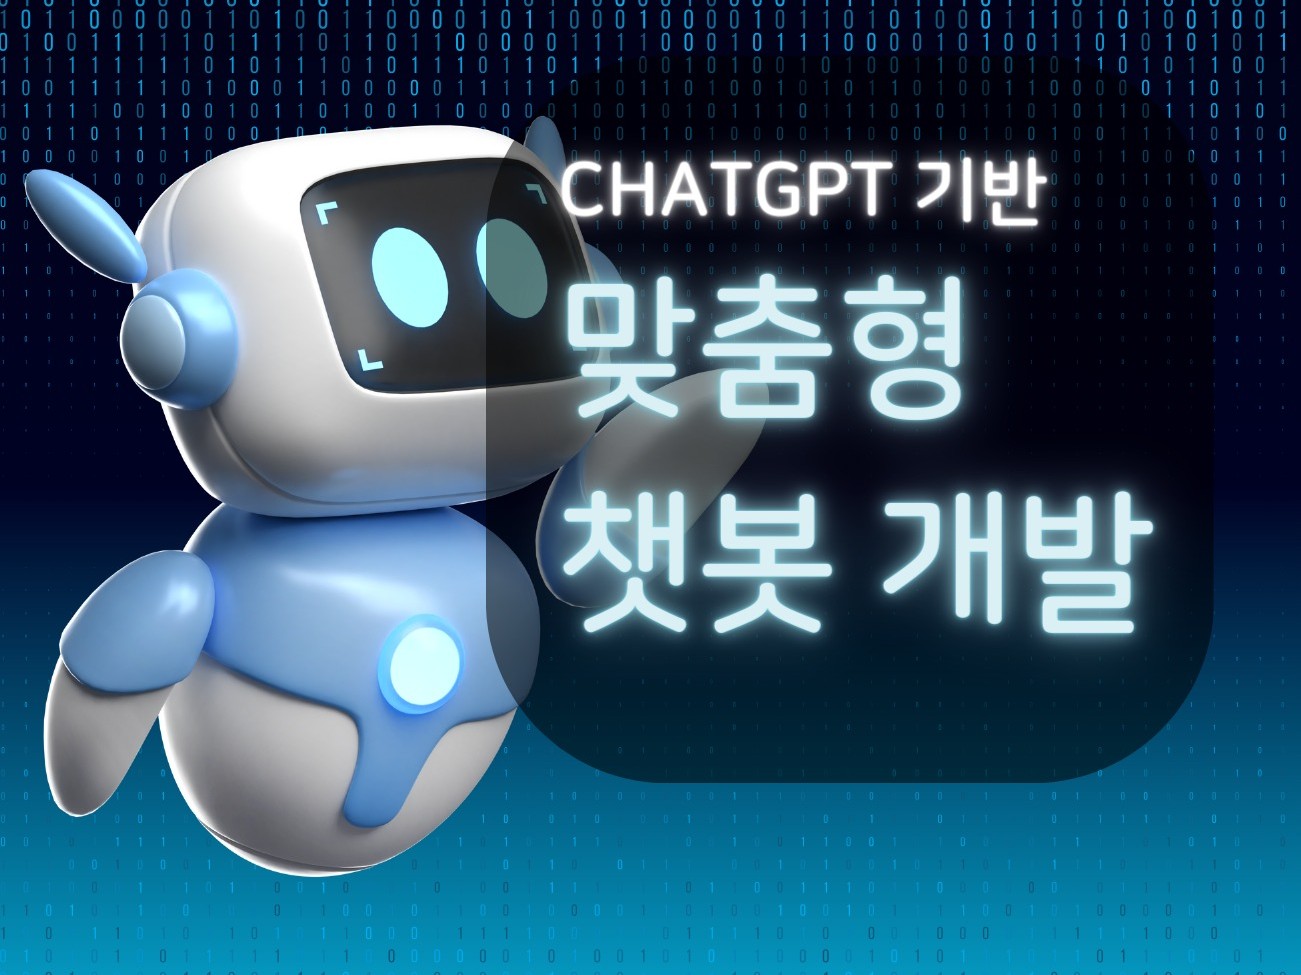 고객센터 ChatGPT 챗봇 개발